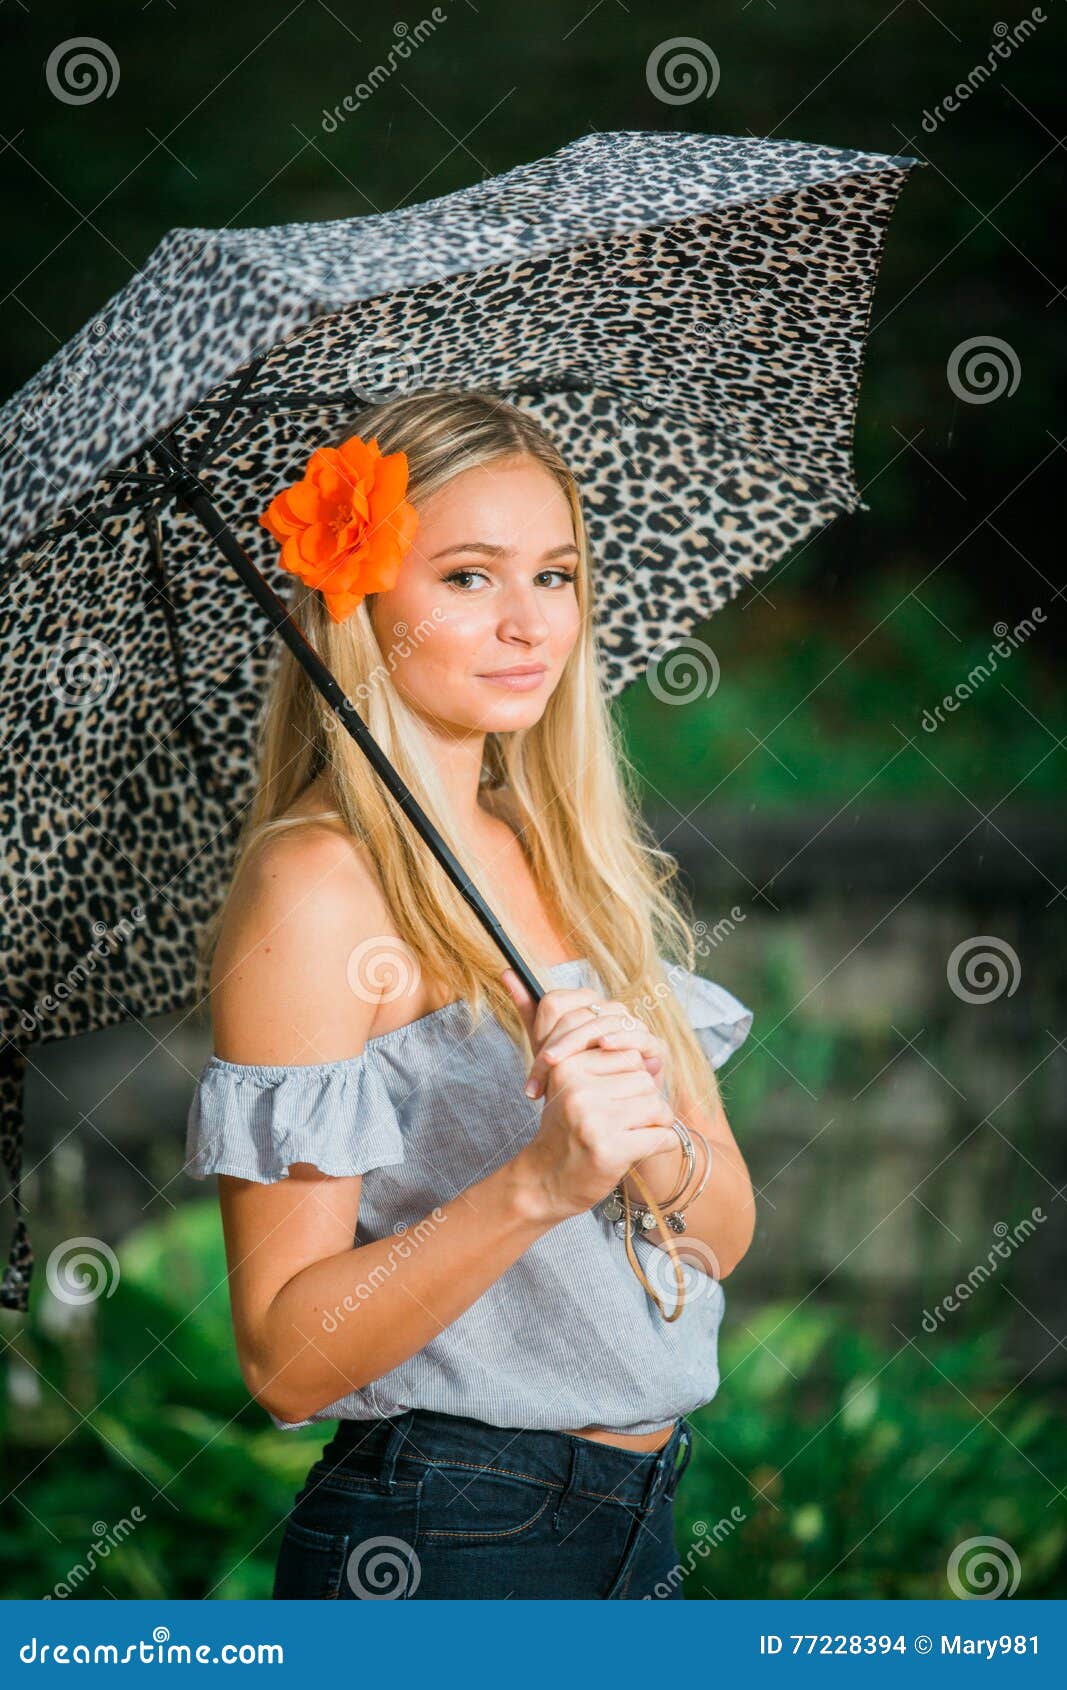 Umbrella Poses For Genesis 8 Female | Daz 3D